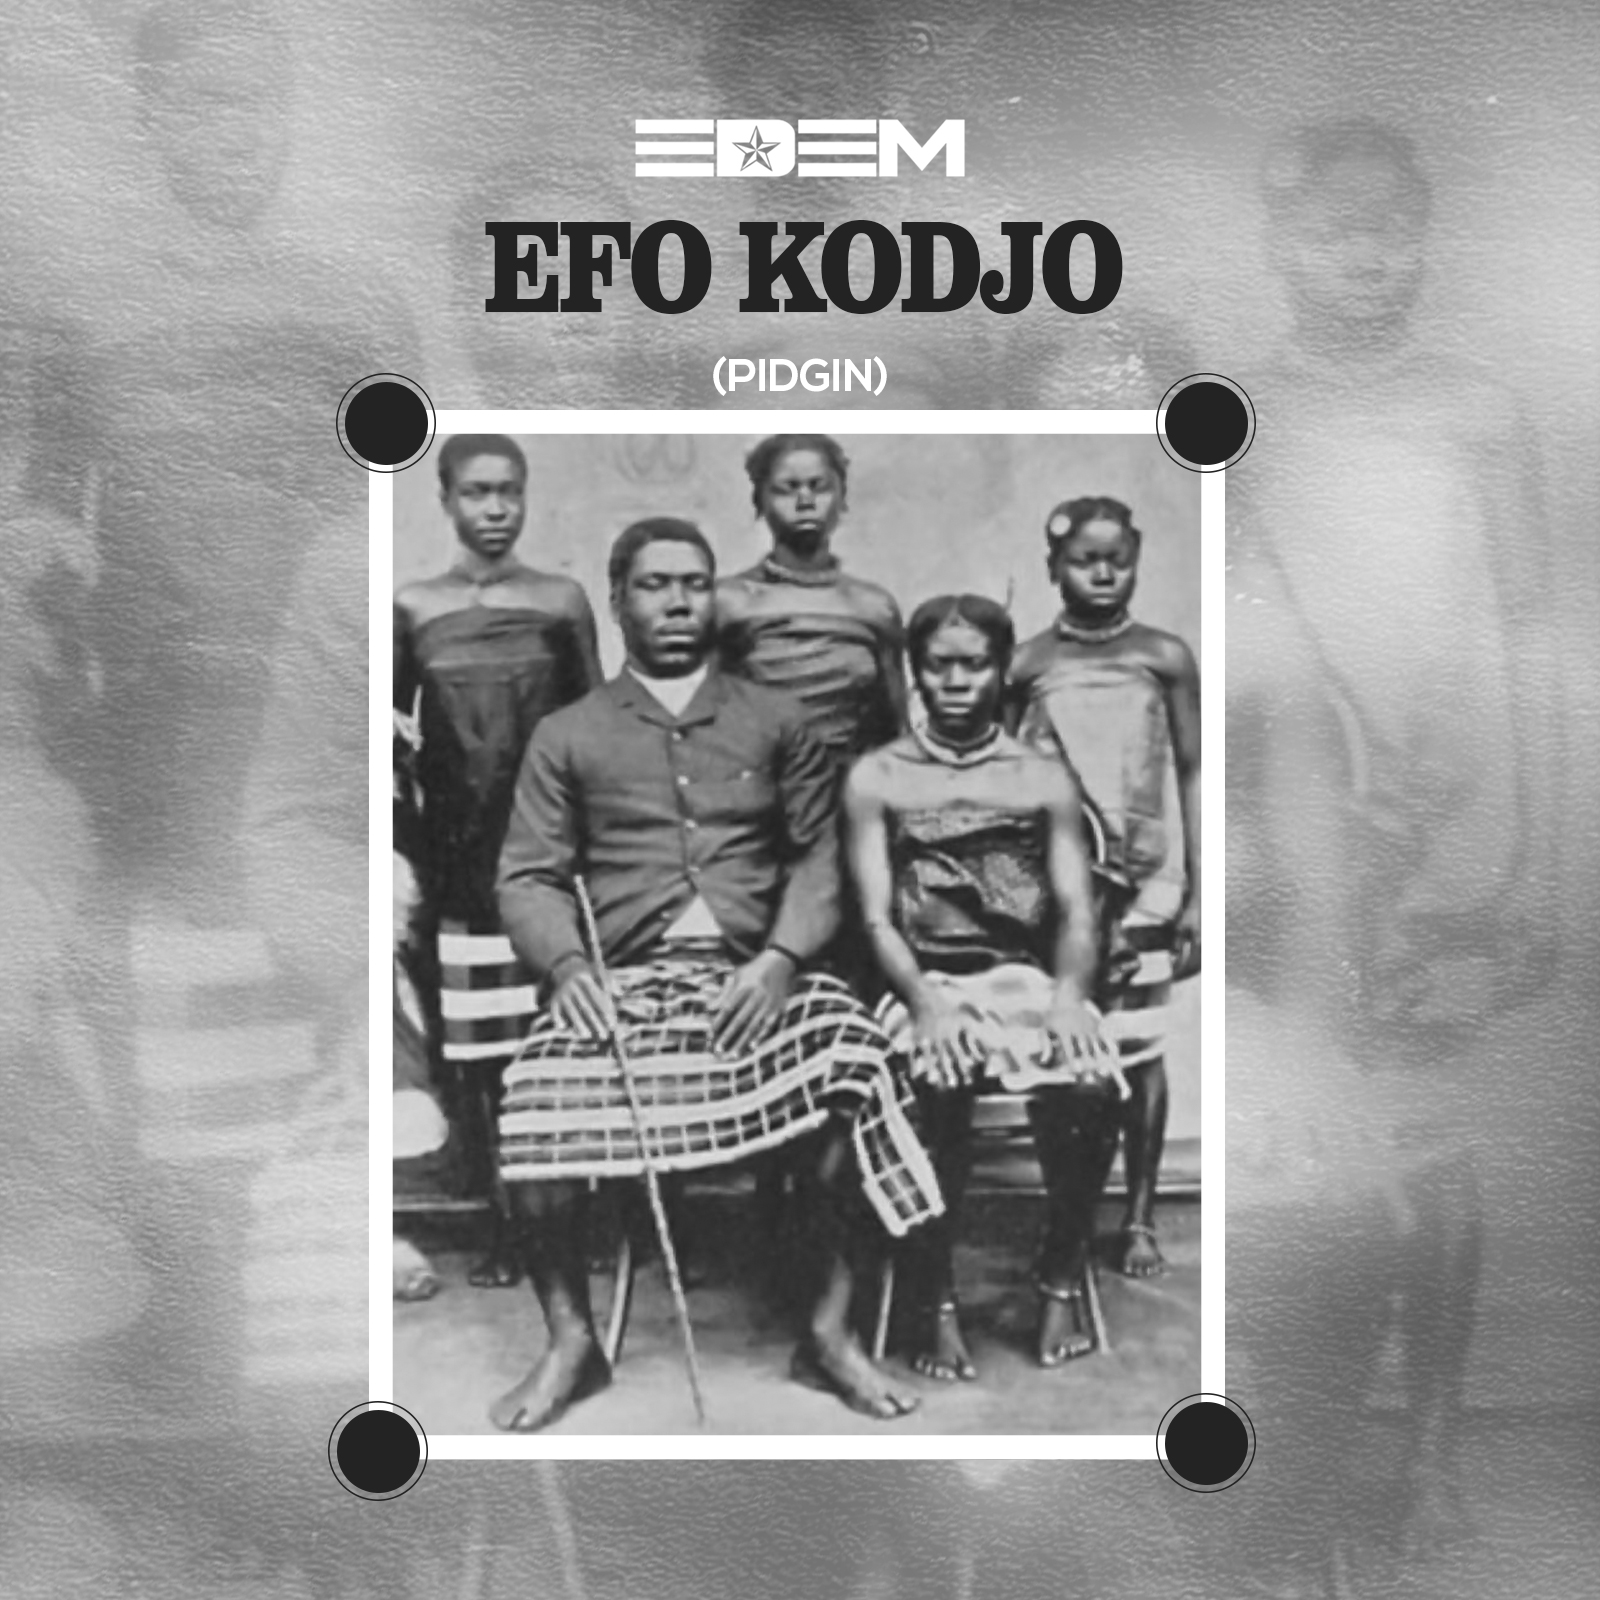 Edem Efo Kodjo